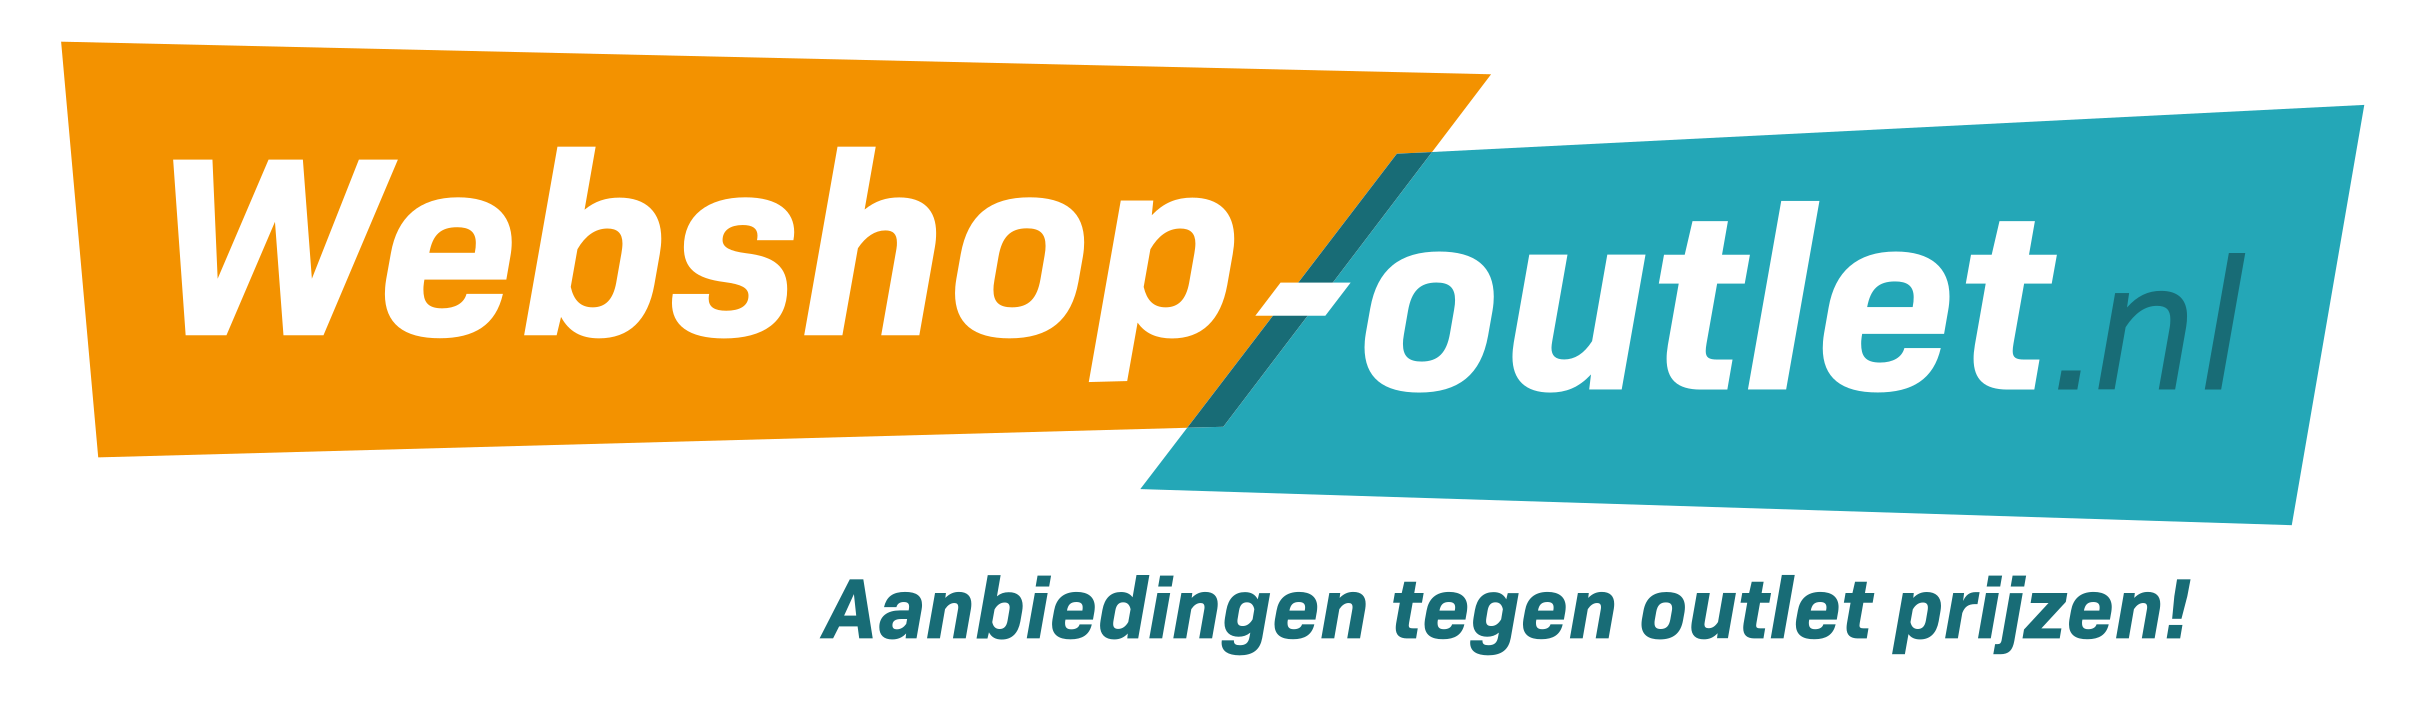 pshops_Webshop-outlet_image_logo